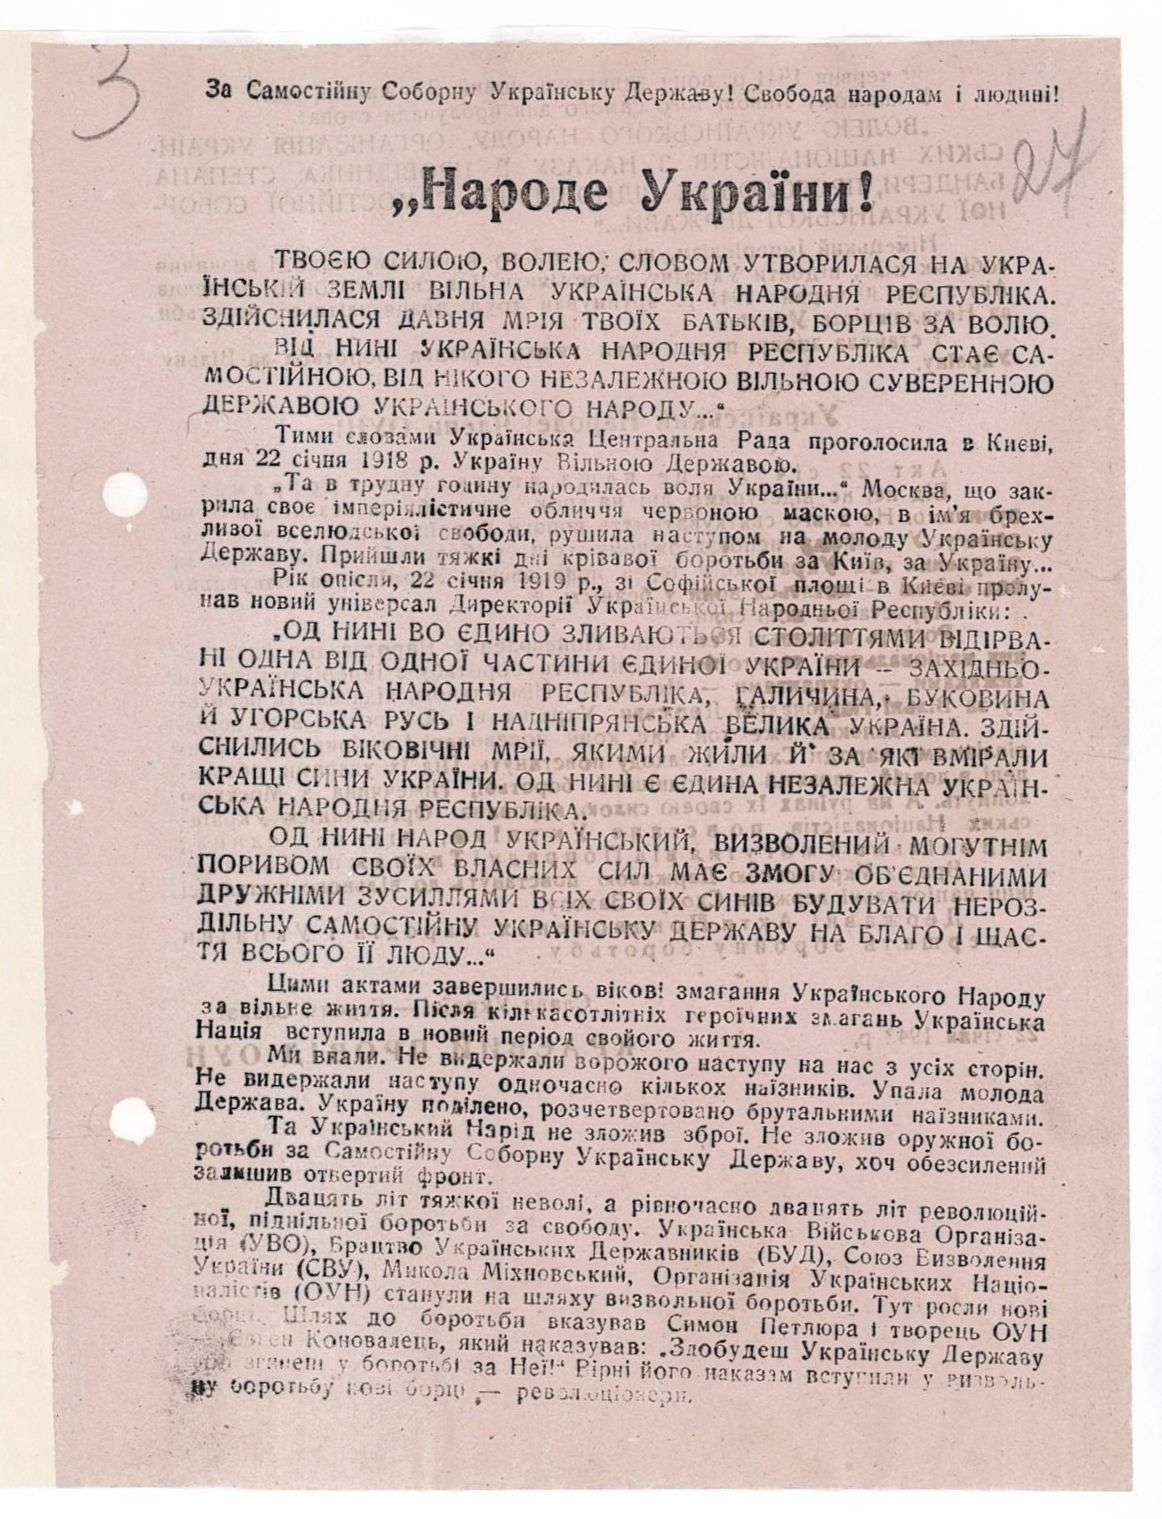 Звернення Крайового проводу Організації українських націоналістів з нагоди проголошення ІУ Універсалу та Акту Злуки. 22 січня 1943 р.